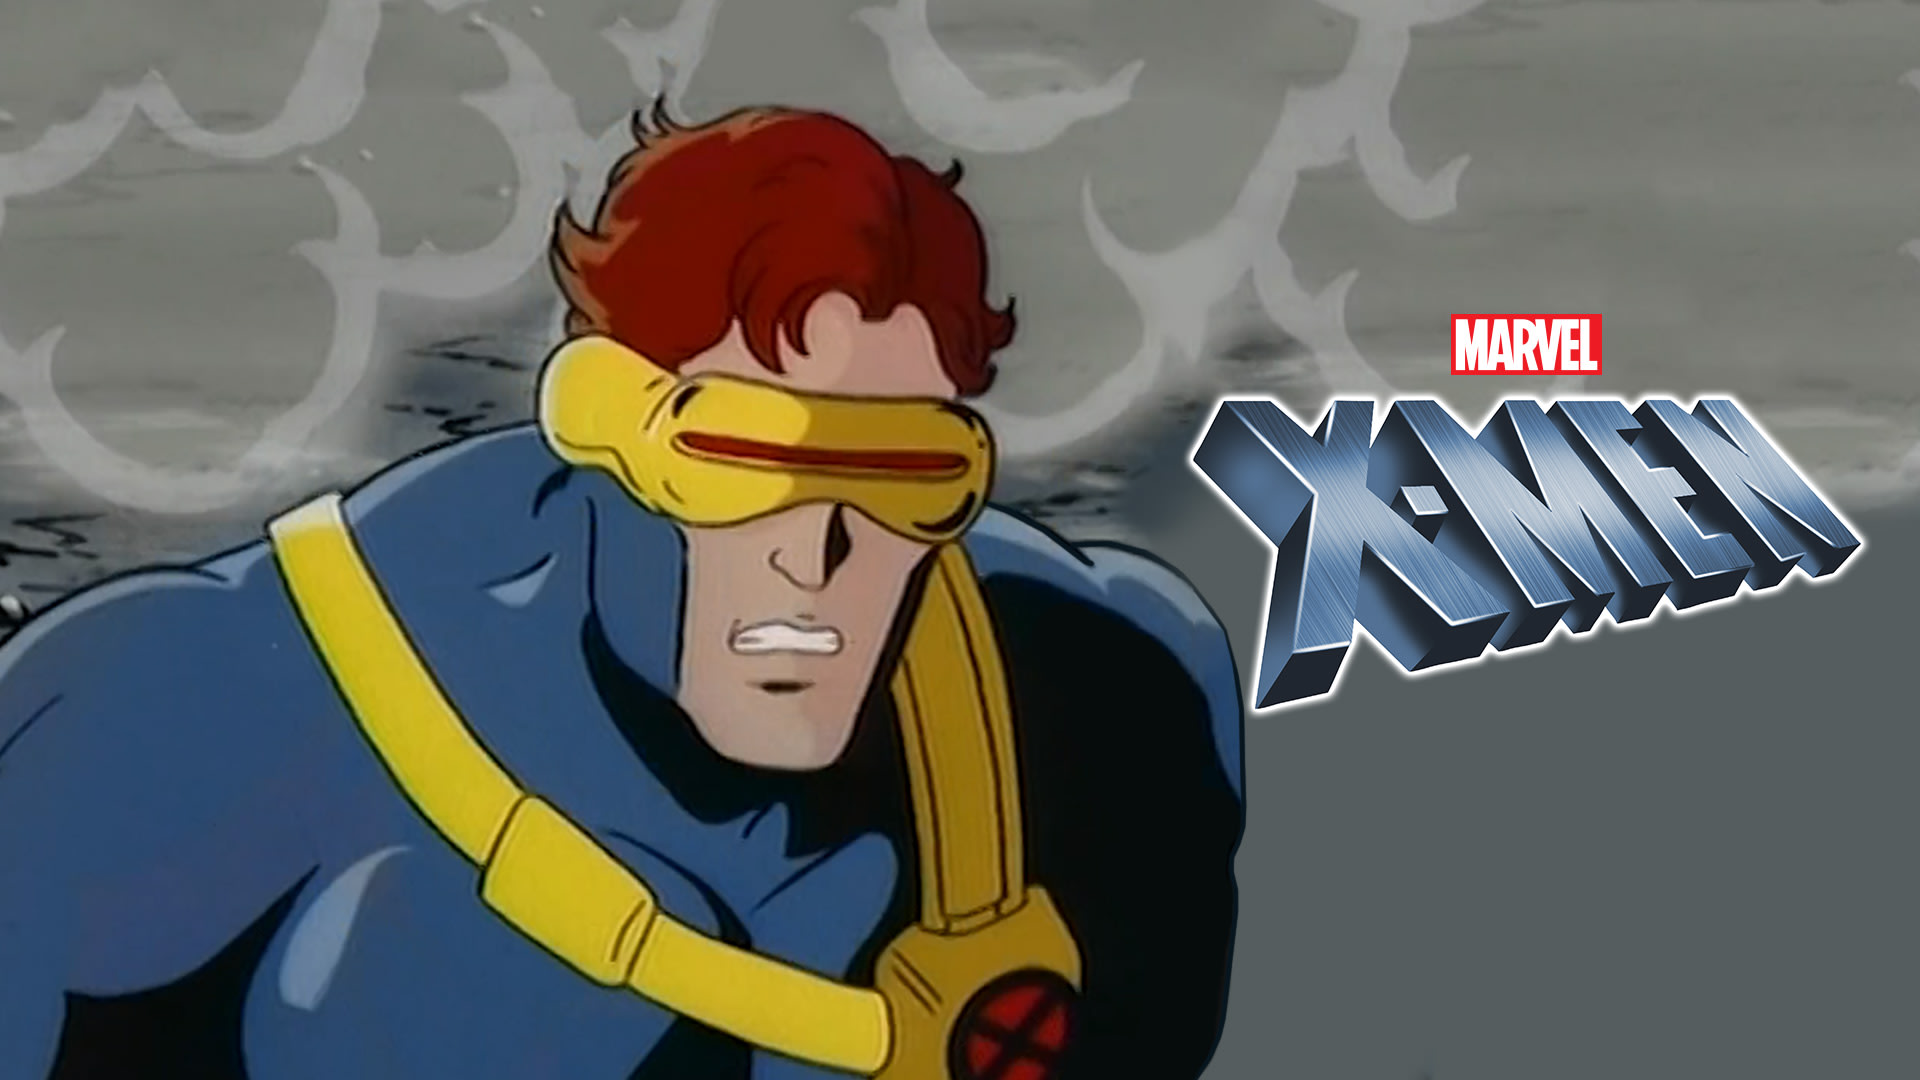 Marvel Comics X-Men, Superhero TV Series - Nonton Semua Episode Terbaru  Online di Disney+ Hotstar